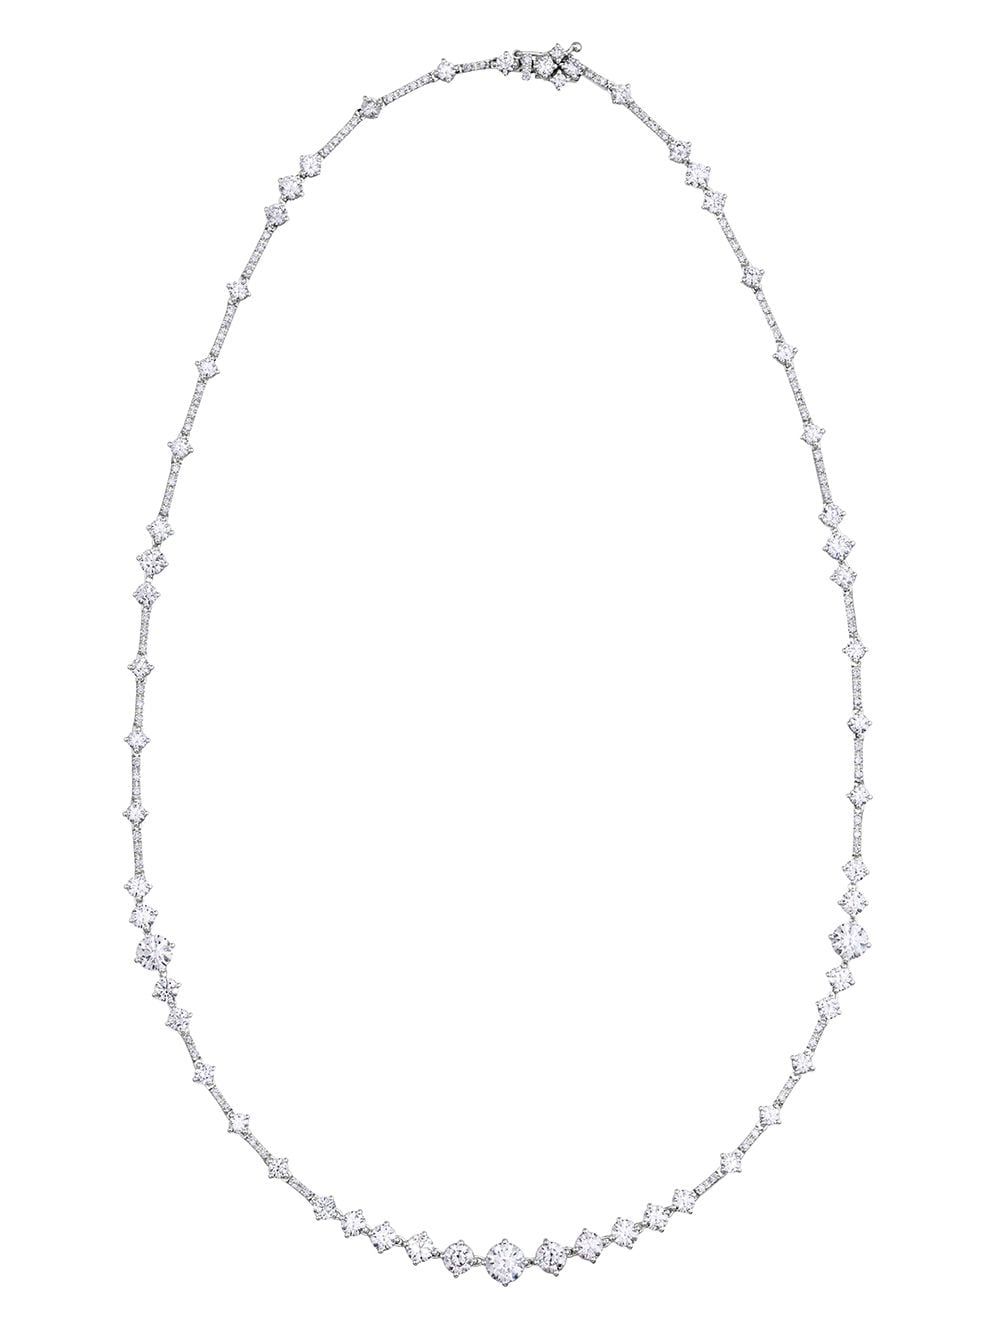 Arpeggia three line necklace in white gold